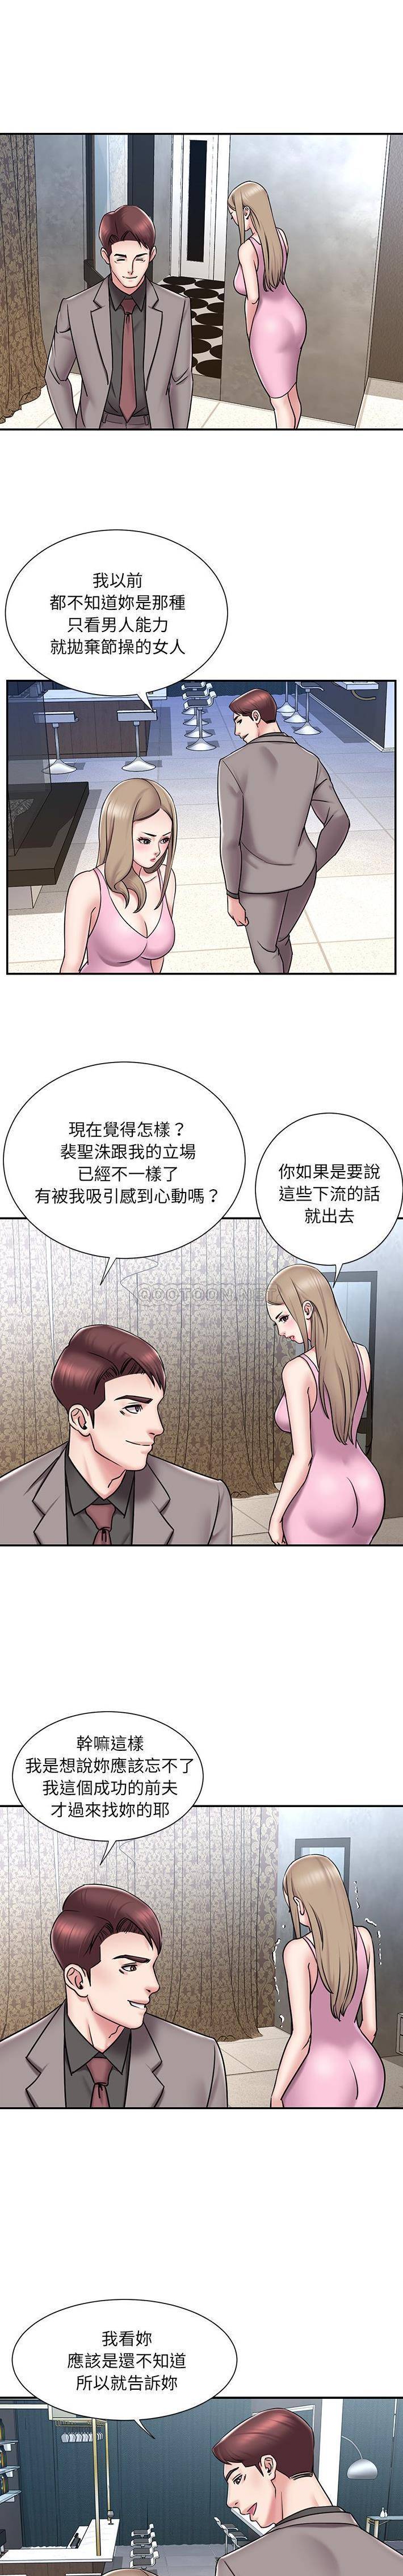 韩国污漫画 被拋棄的男人(男孩沒人愛) 第52话 11